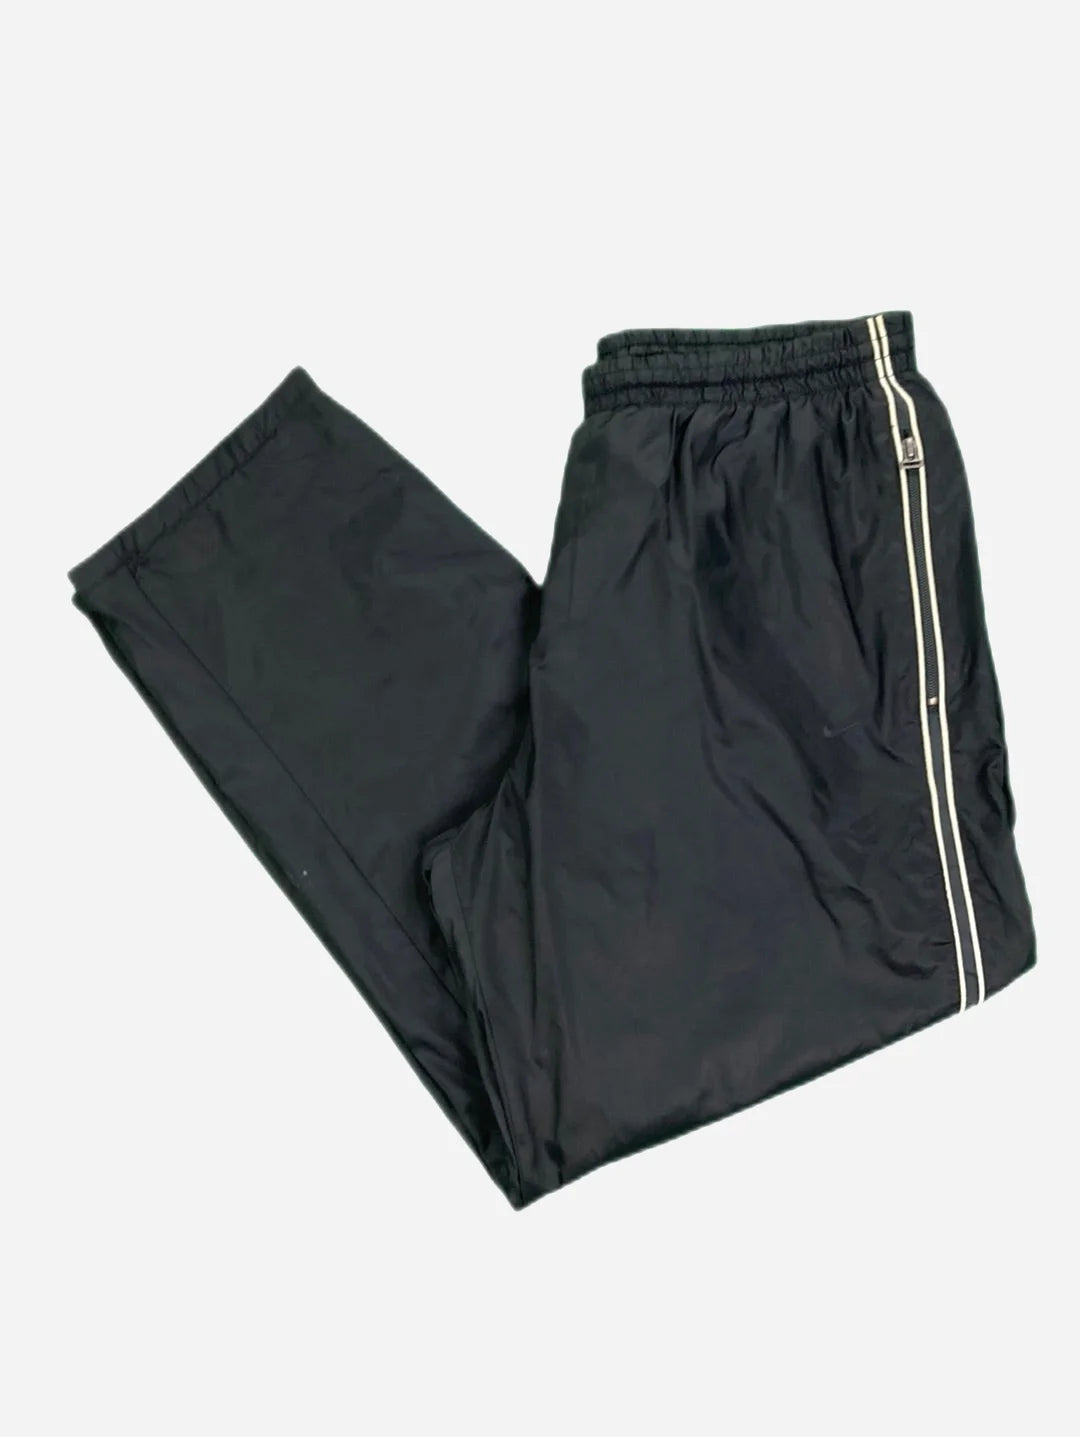 Nike Track Pants (XL) – lastdecades